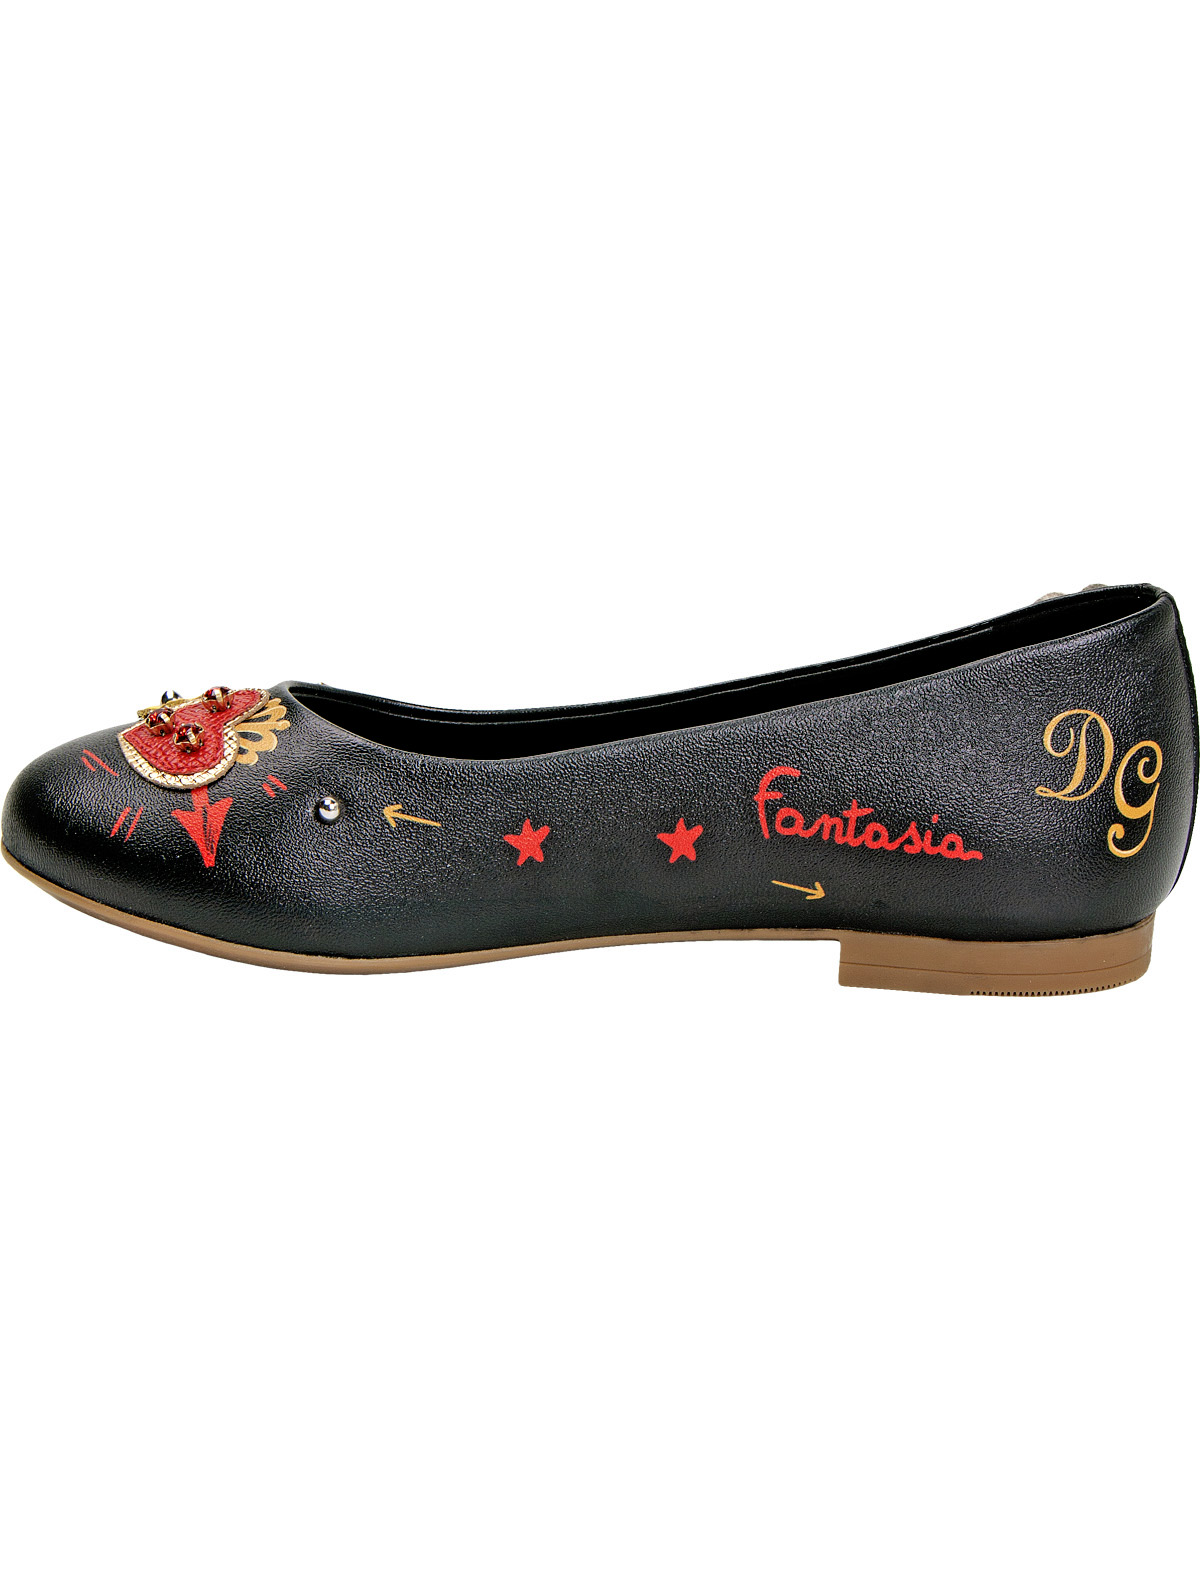 Туфли Dolce & Gabbana 1912956, цвет черный, размер 36 2011109780302 - фото 3